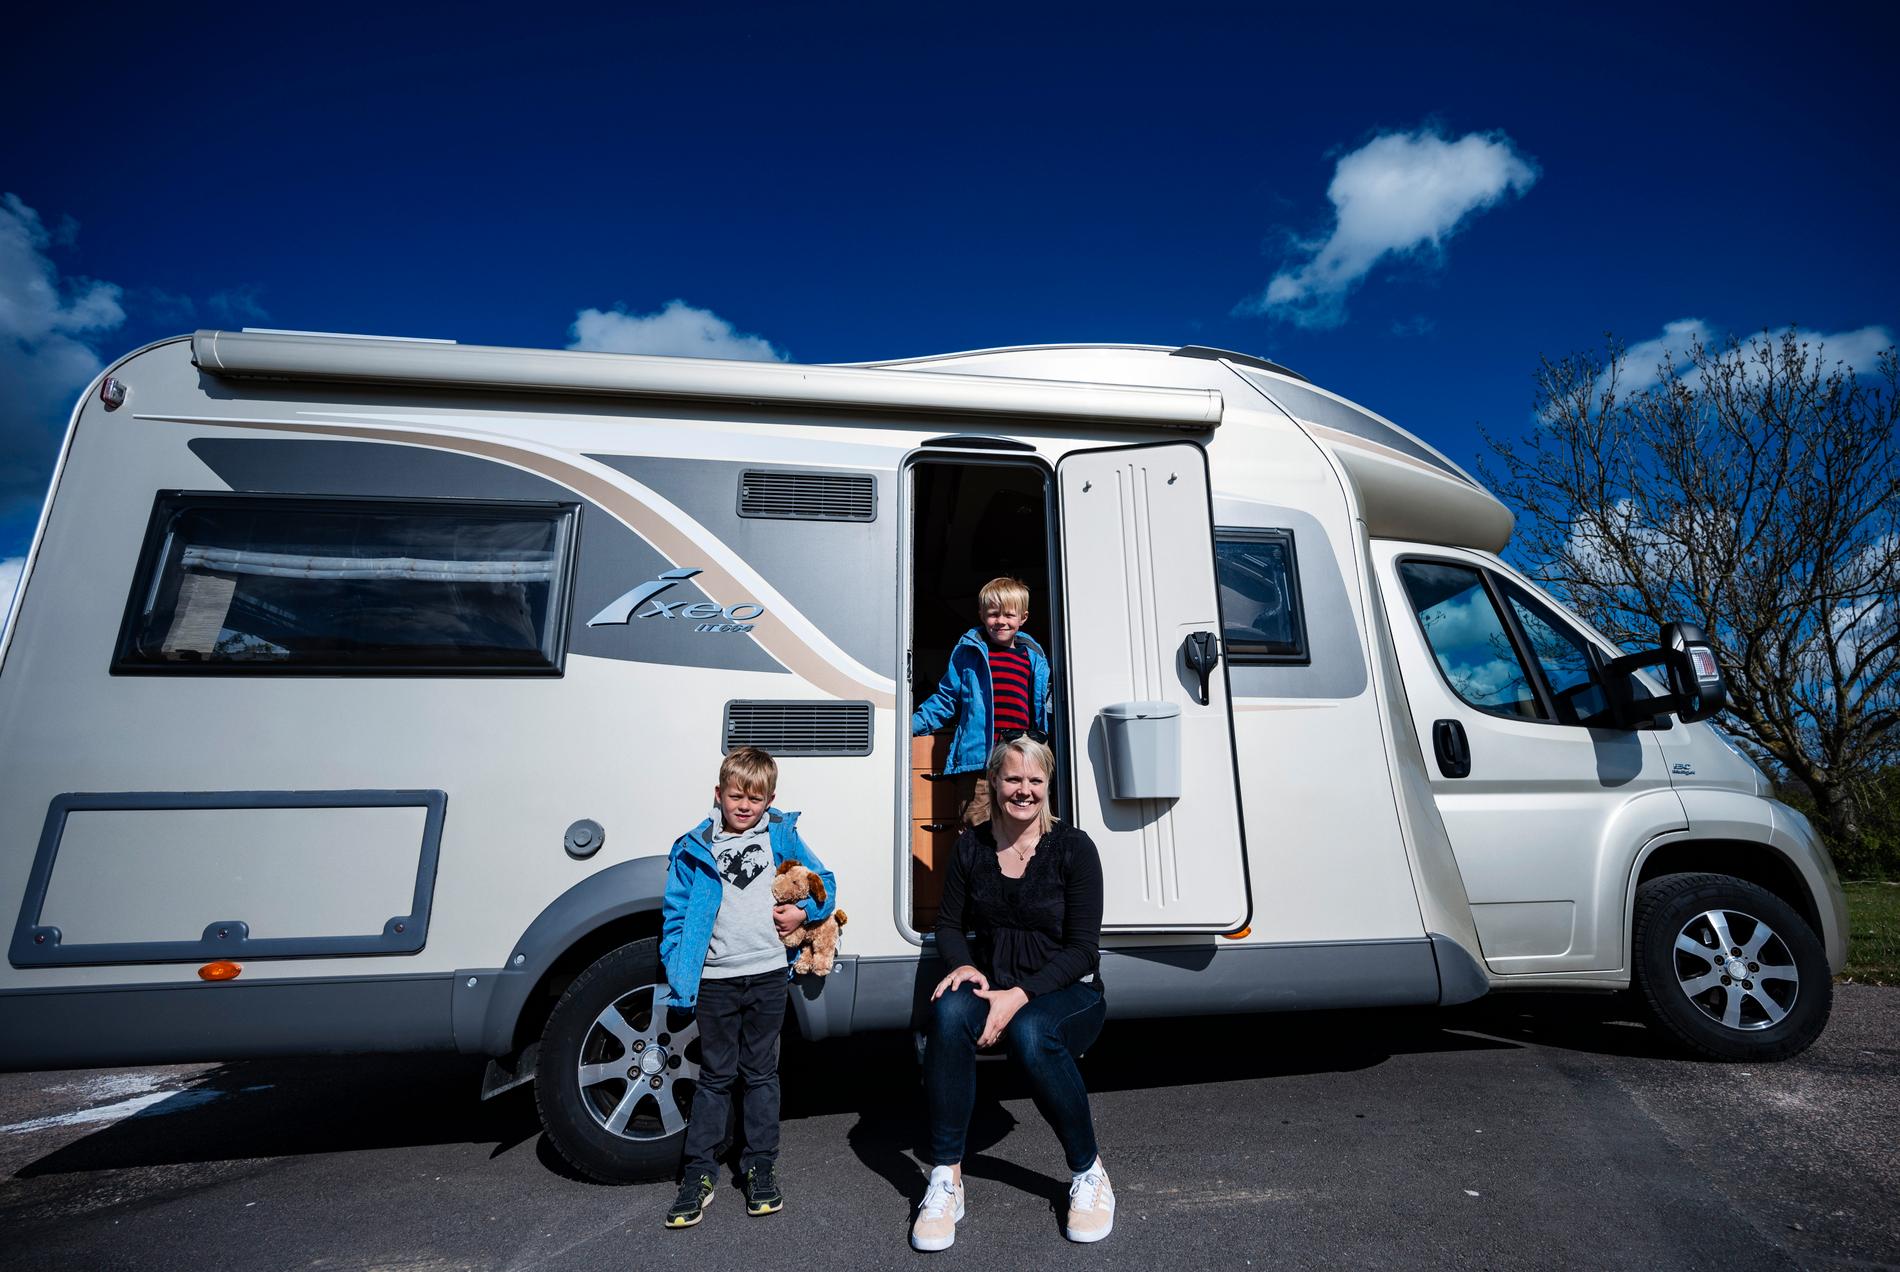 Emma Bauer och sjuåriga tvillingsönerna Ebbe och Vincent utanför familjens nya husbil. "Vi kände att det är ett smidigt sätt att ta sig runt och uppleva Sverige på och ett bra sätt att resa på nu när det är osäkert hur man kan göra i framtiden", säger Emma Bauer.